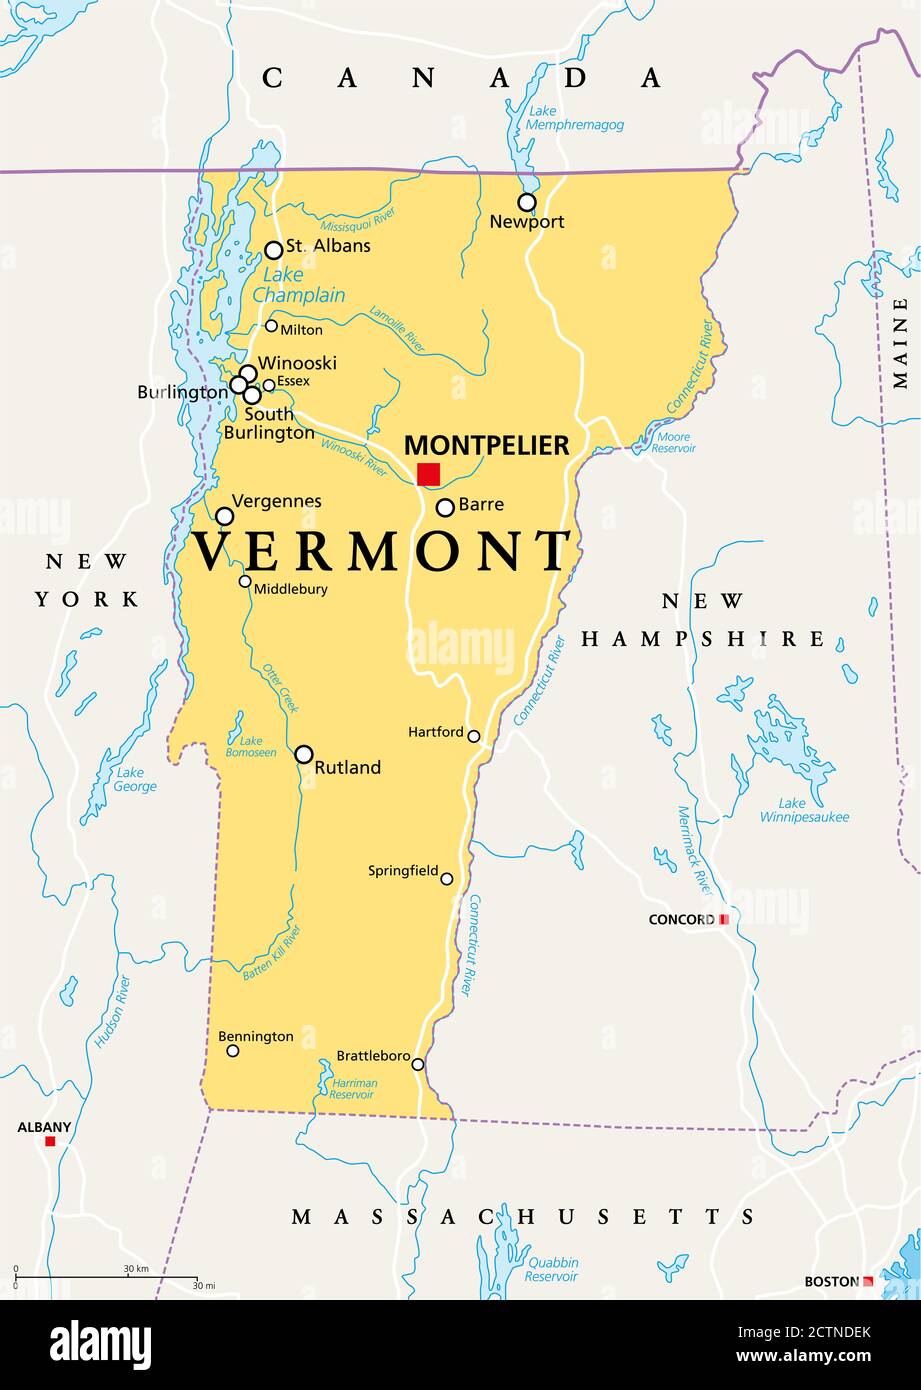 Vermont, VT, mappa politica con capitale Montpelier, frontiere, città, fiumi e laghi. Stato nordorientale nella regione del New England degli Stati Uniti. Foto Stock